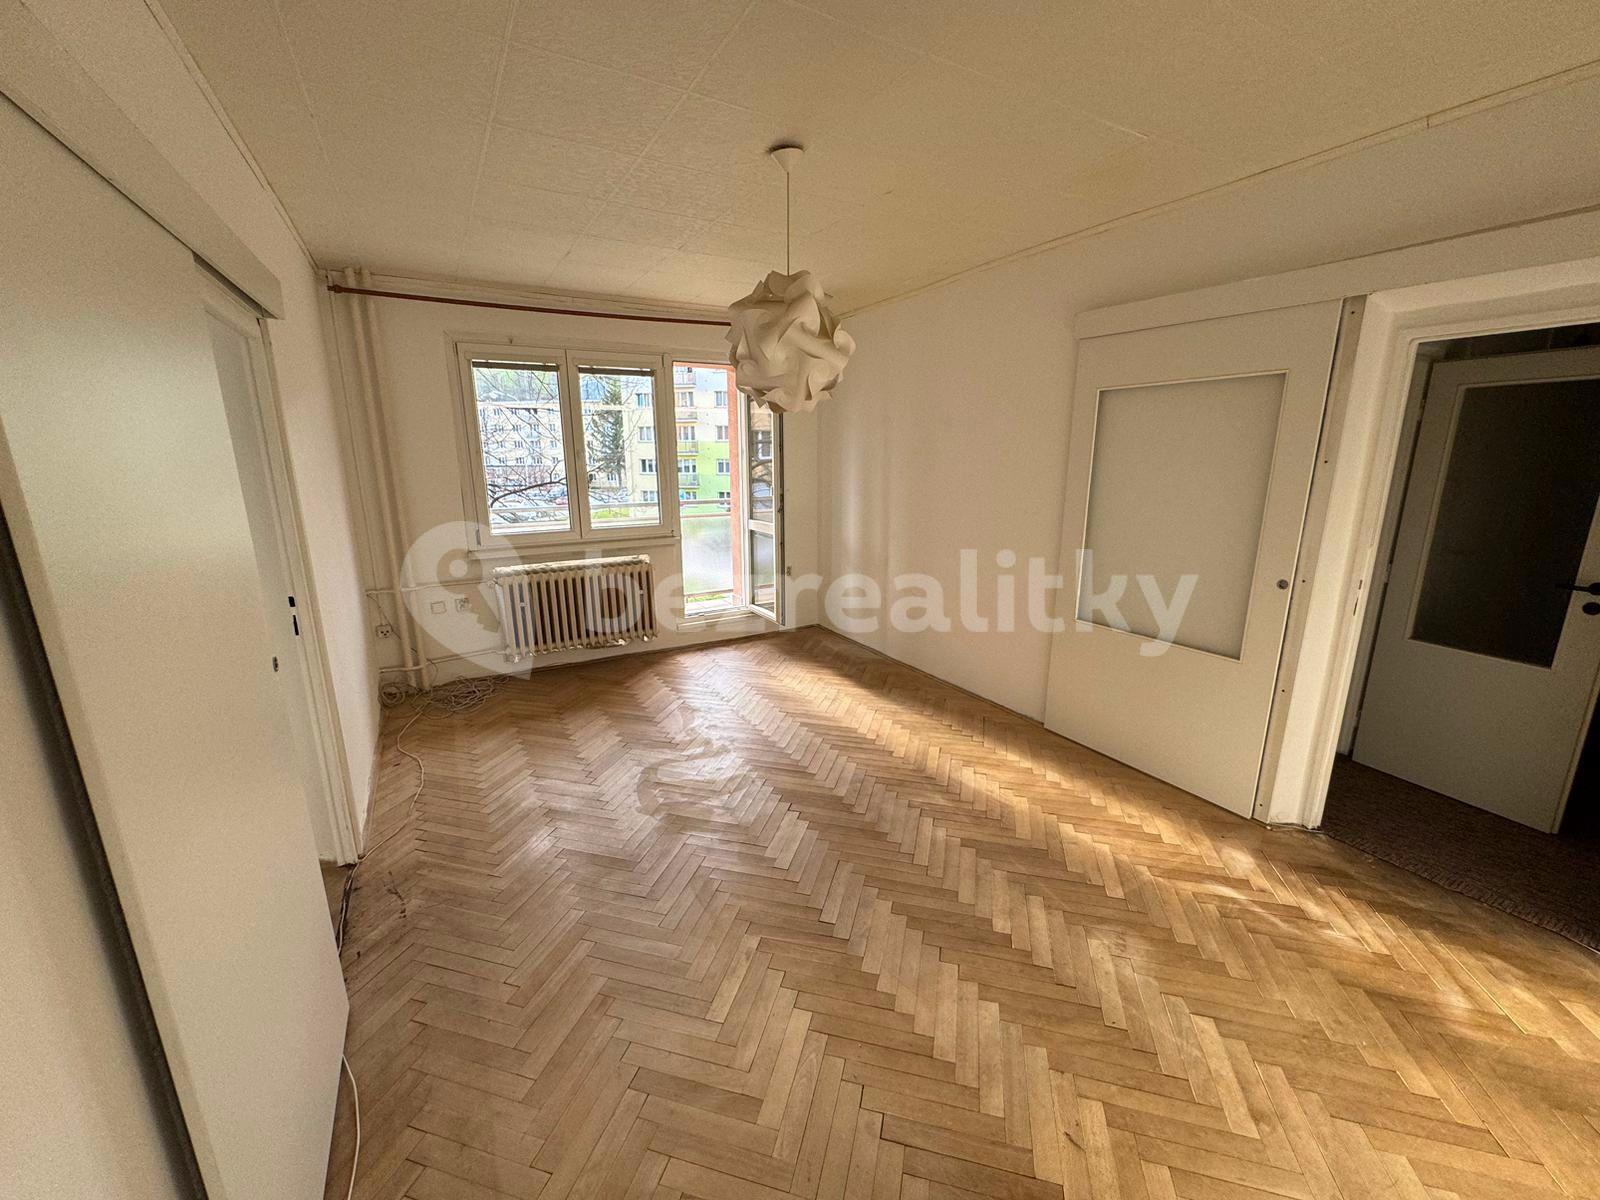 2 bedroom flat to rent, 35 m², Zeyerova, Jeseník, Olomoucký Region